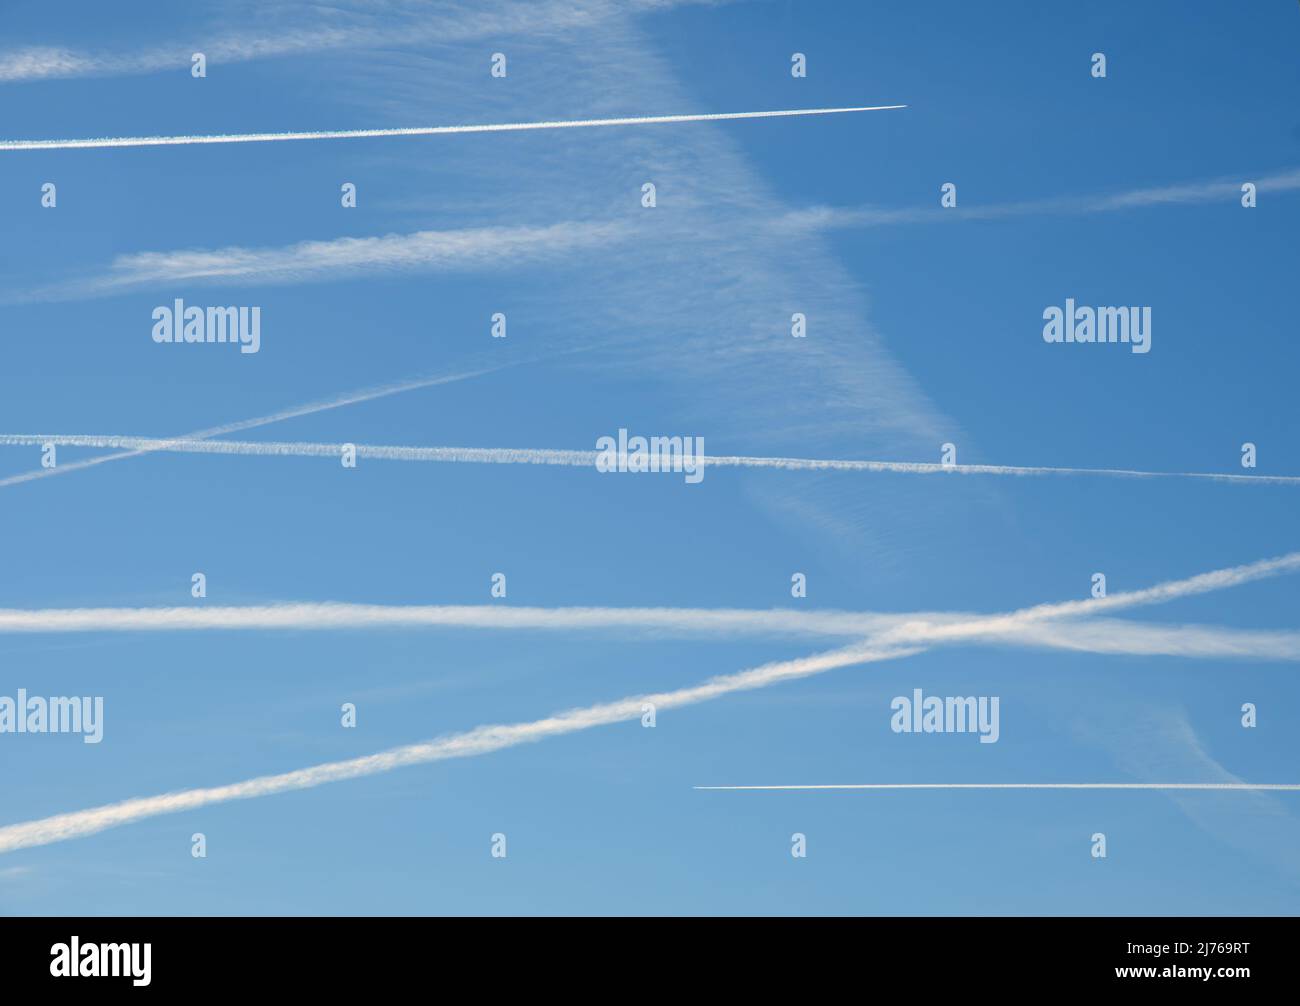 Plusieurs avions contrent le ciel bleu dans un état de survol, avec deux avions faisant activement de nouveaux sentiers en haut et en bas, à la direction opposée Banque D'Images